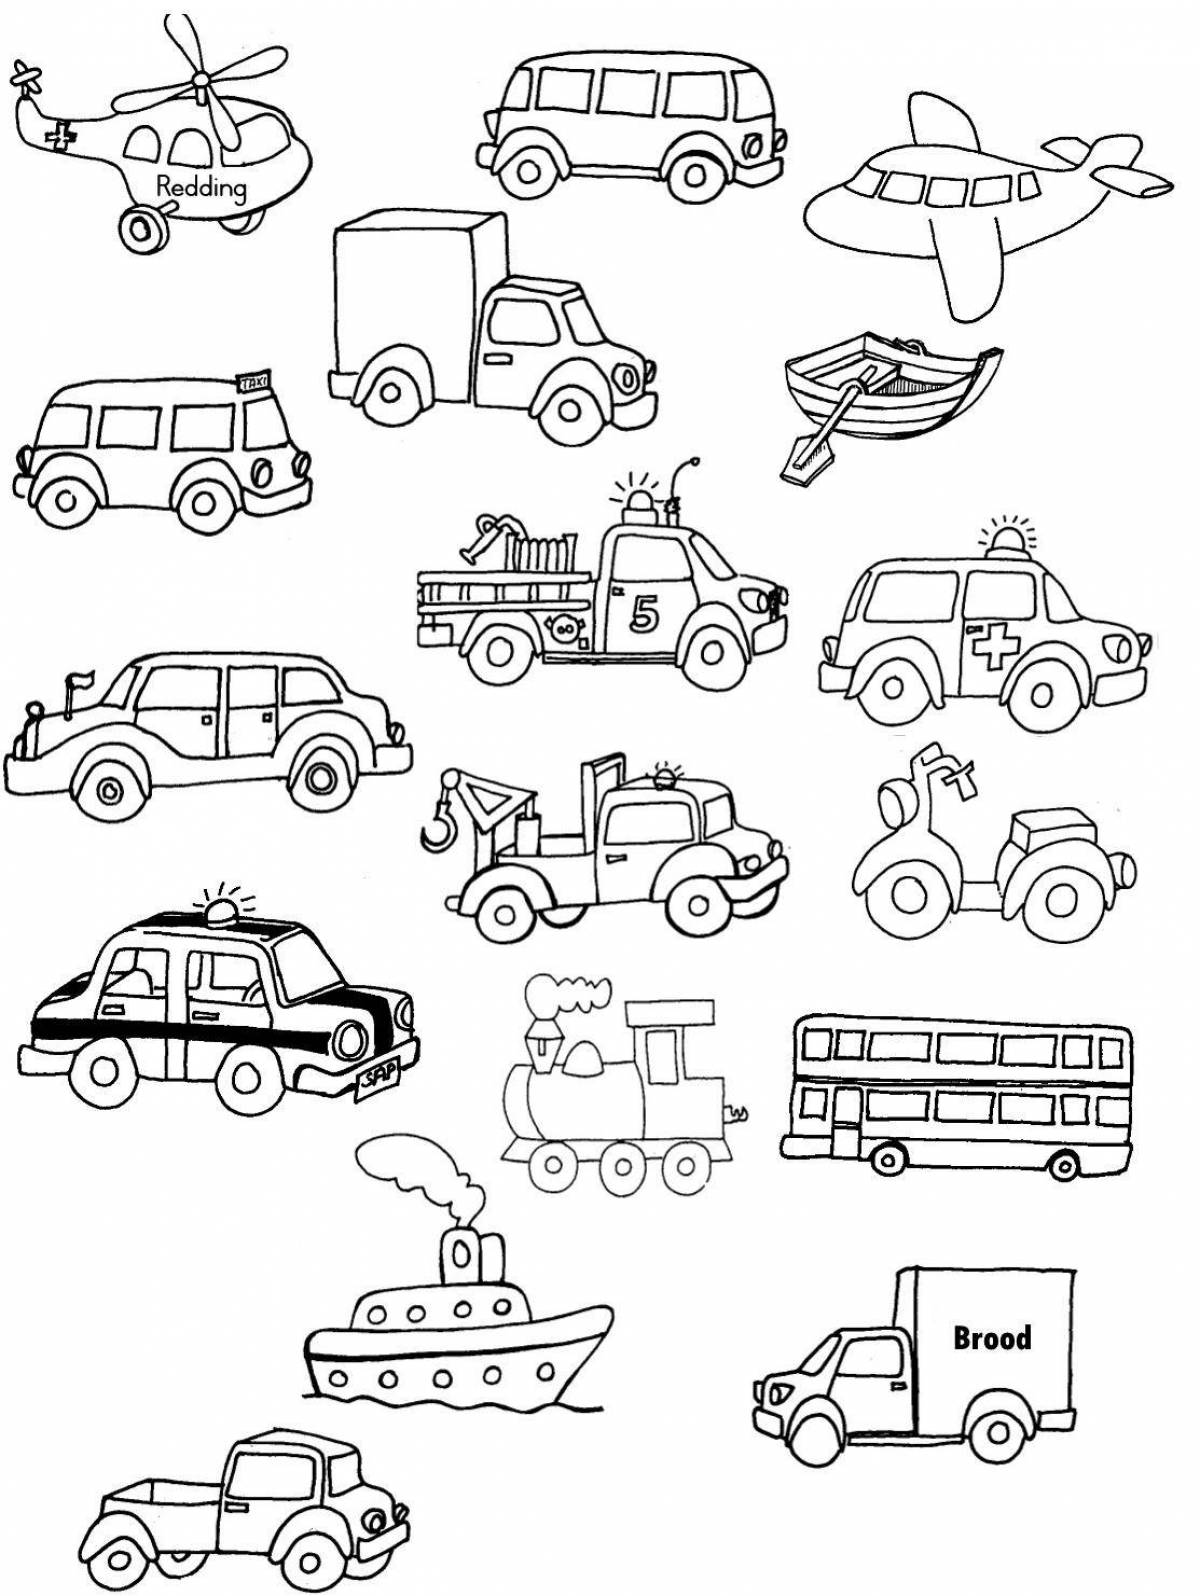 Красочная страница-раскраска «специальный транспорт» для детей 6-7 лет